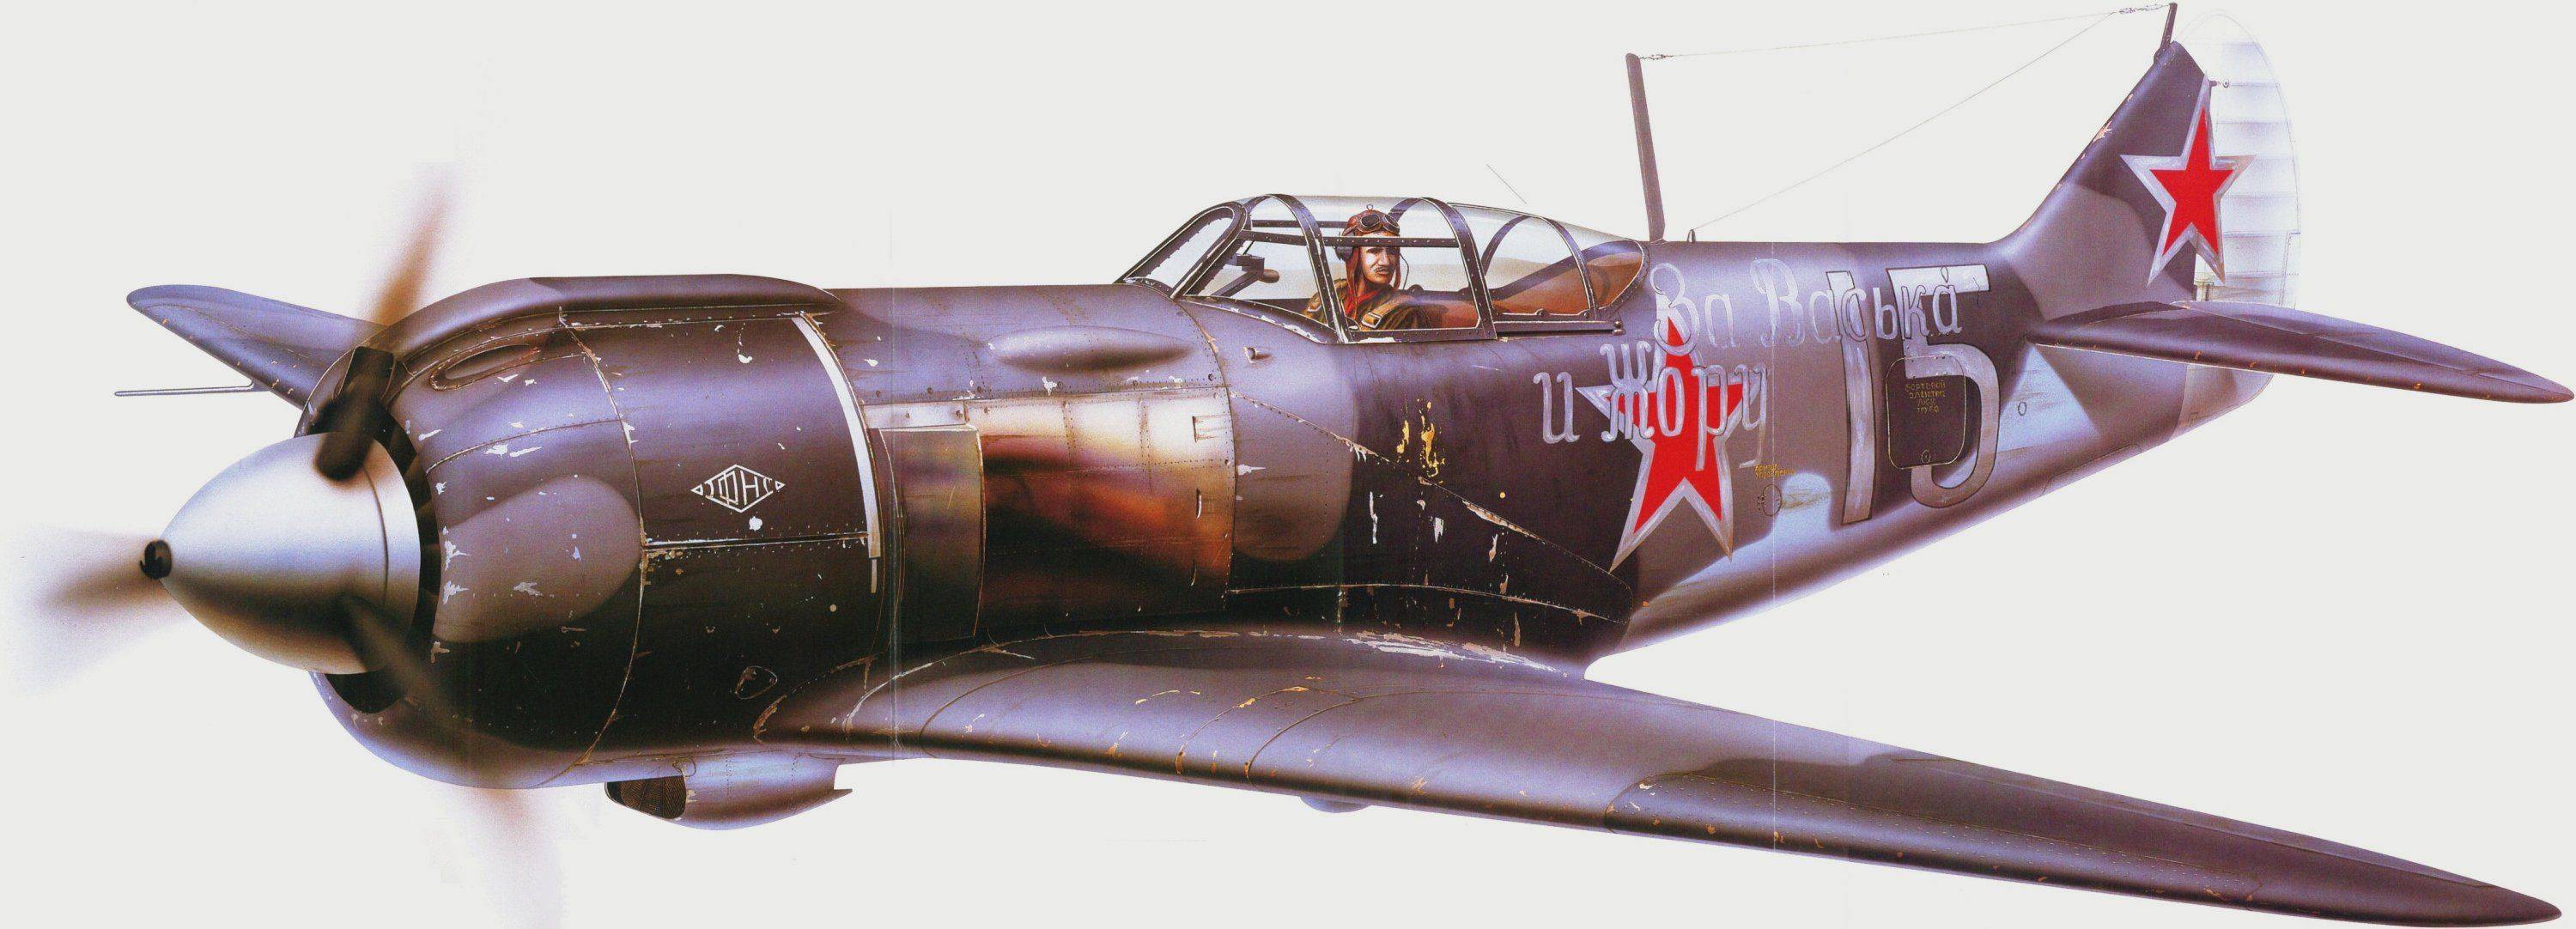 Ла-5 самый массовый советский самолет с двигателем воздушного охлаждения | красные соколы нашей родины